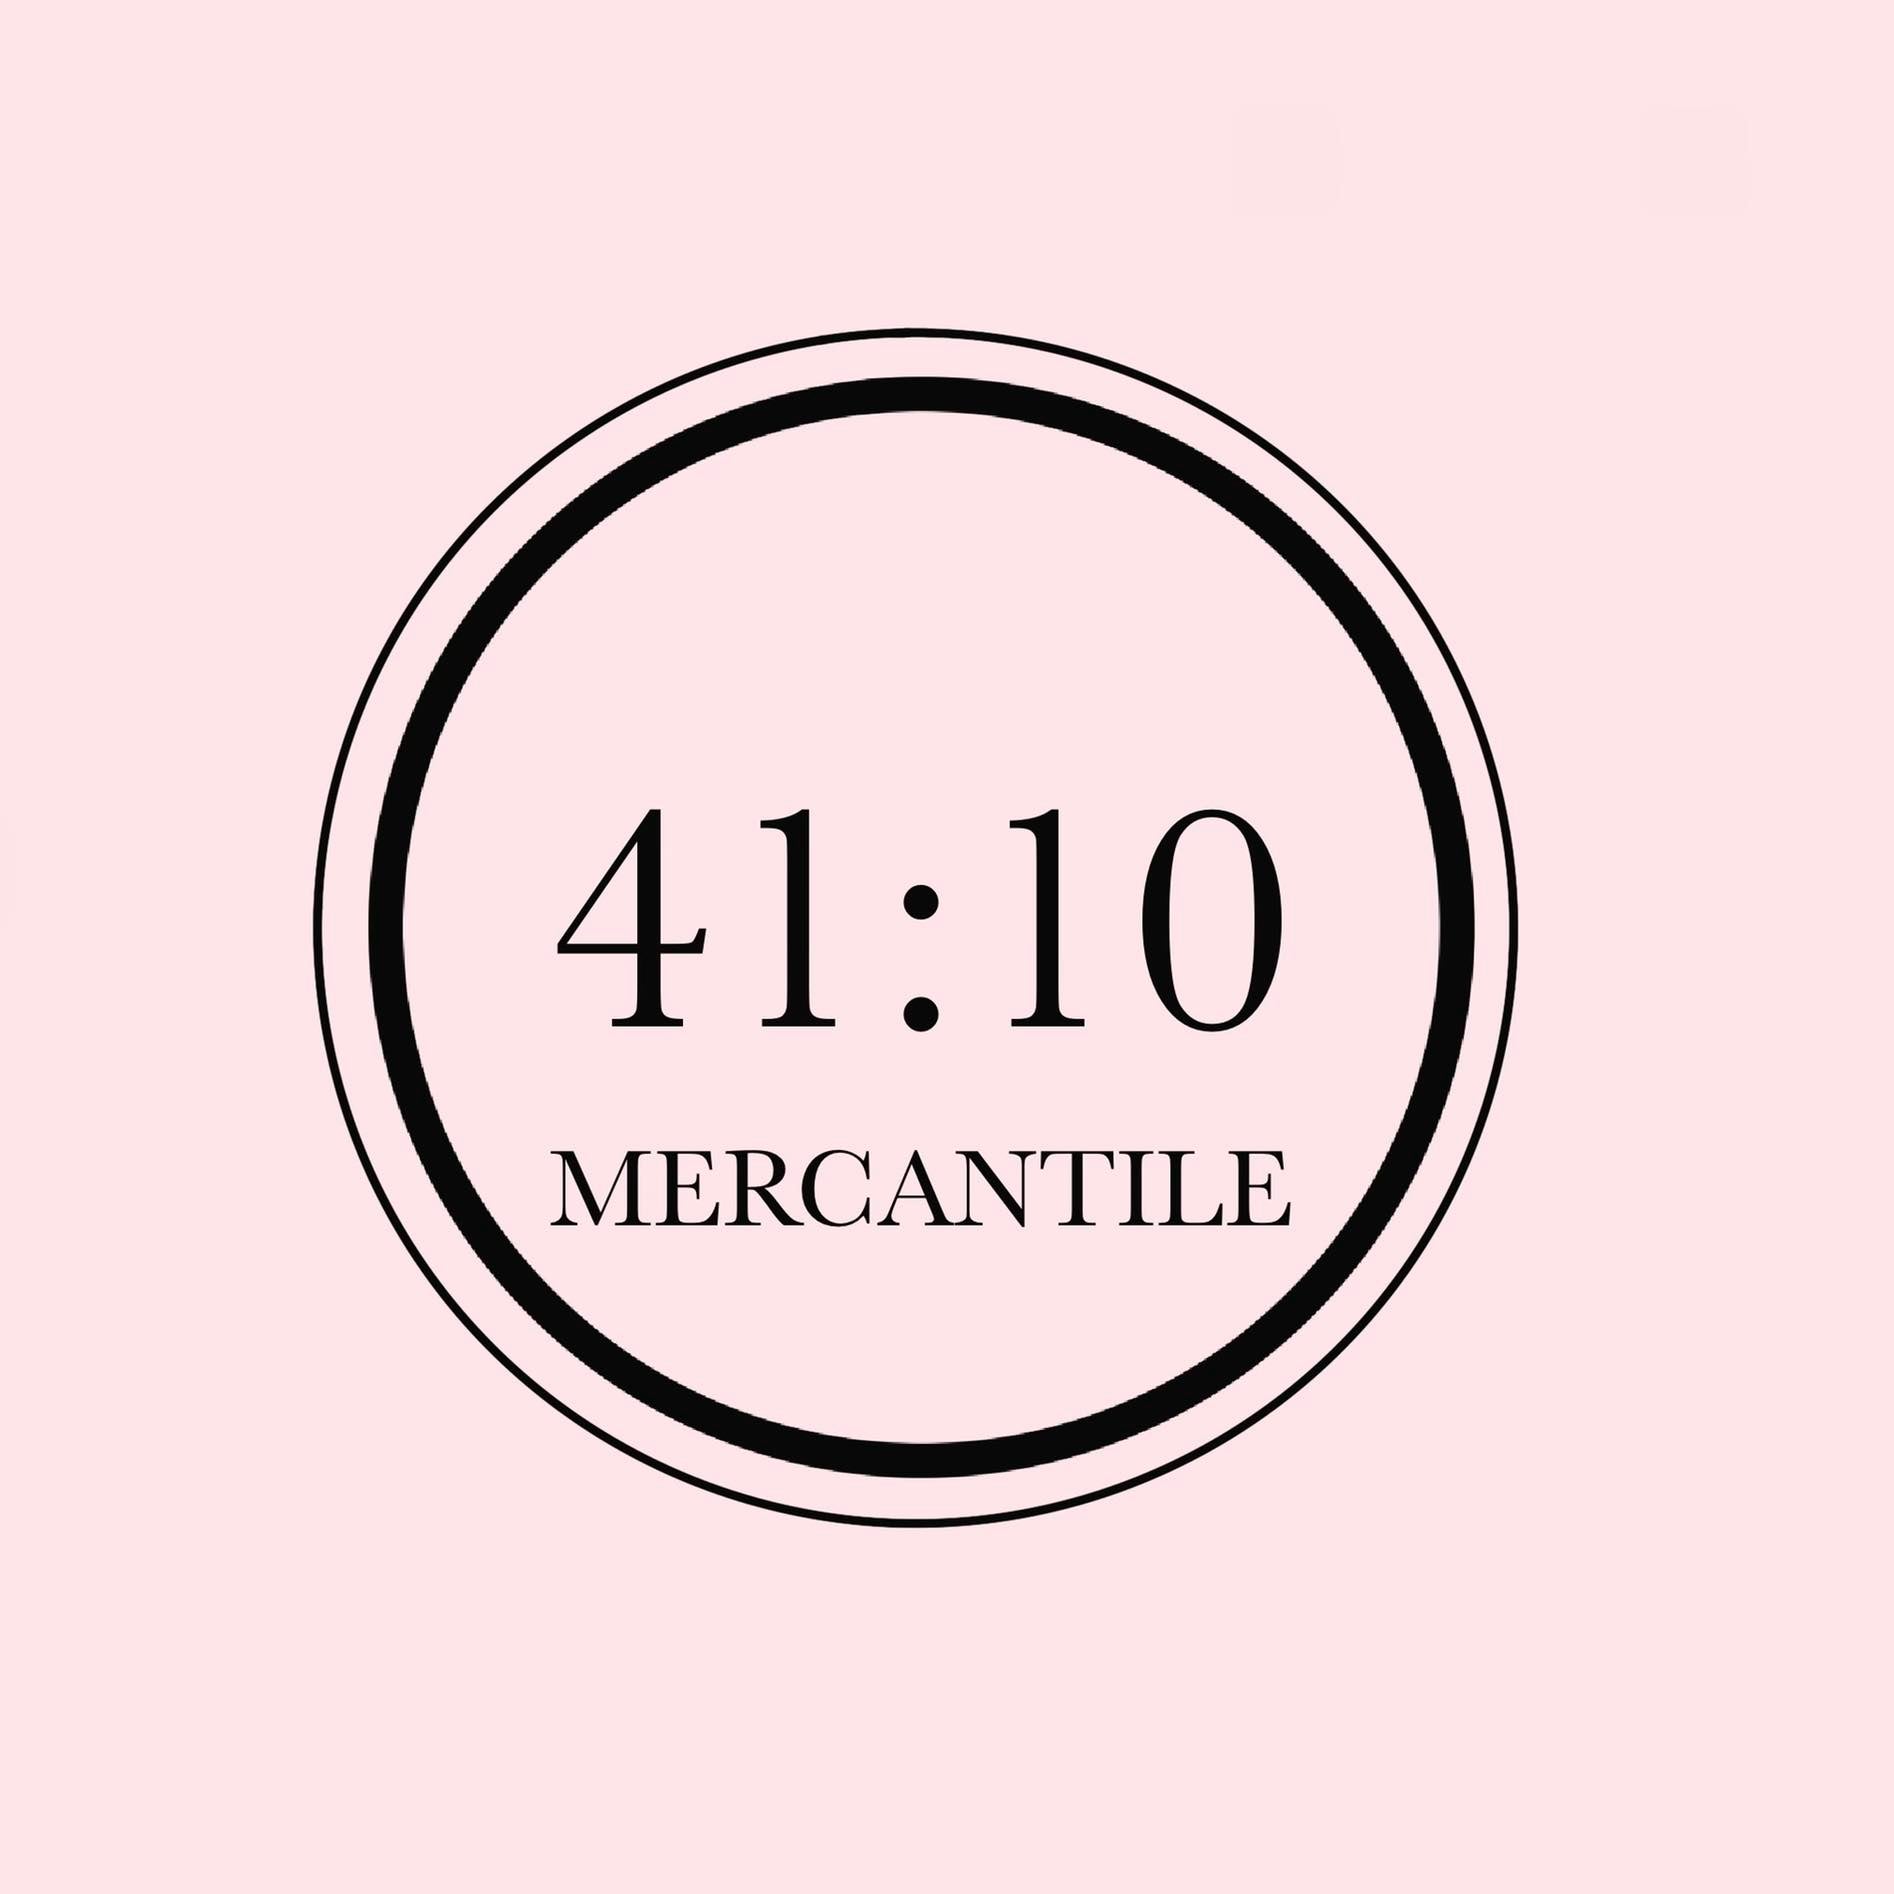 41:10 Mercantile